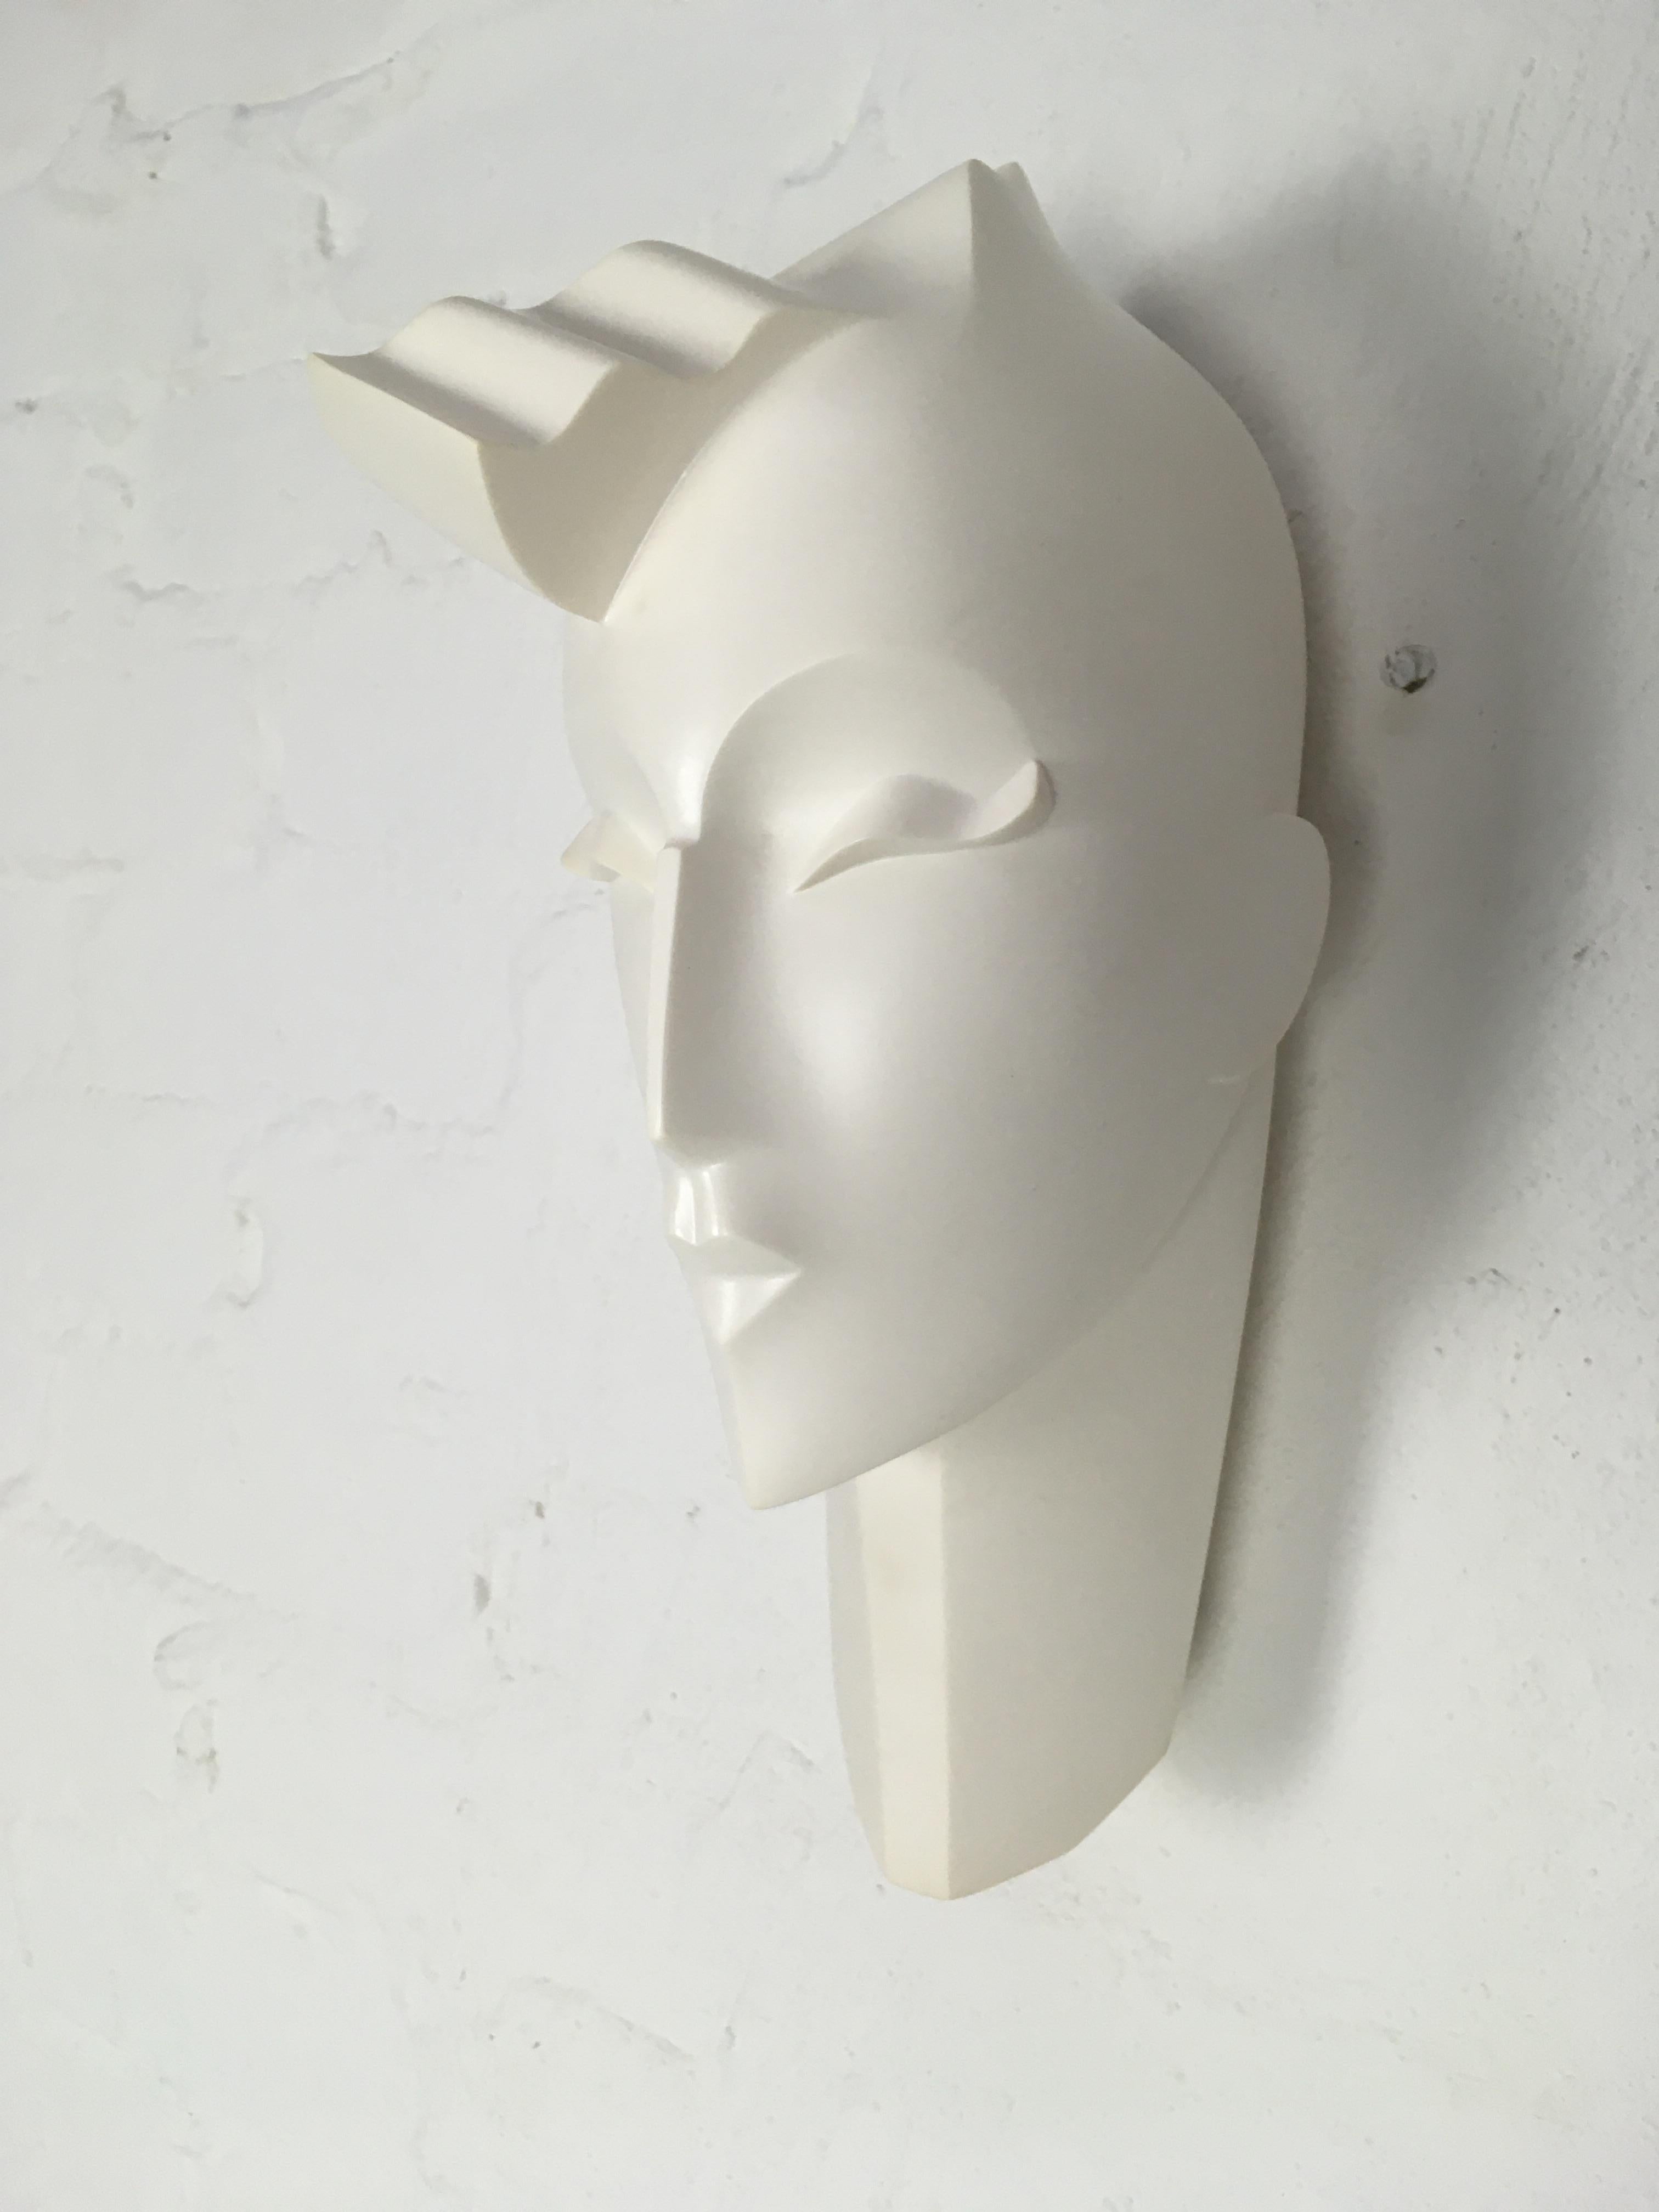 white mannequin head